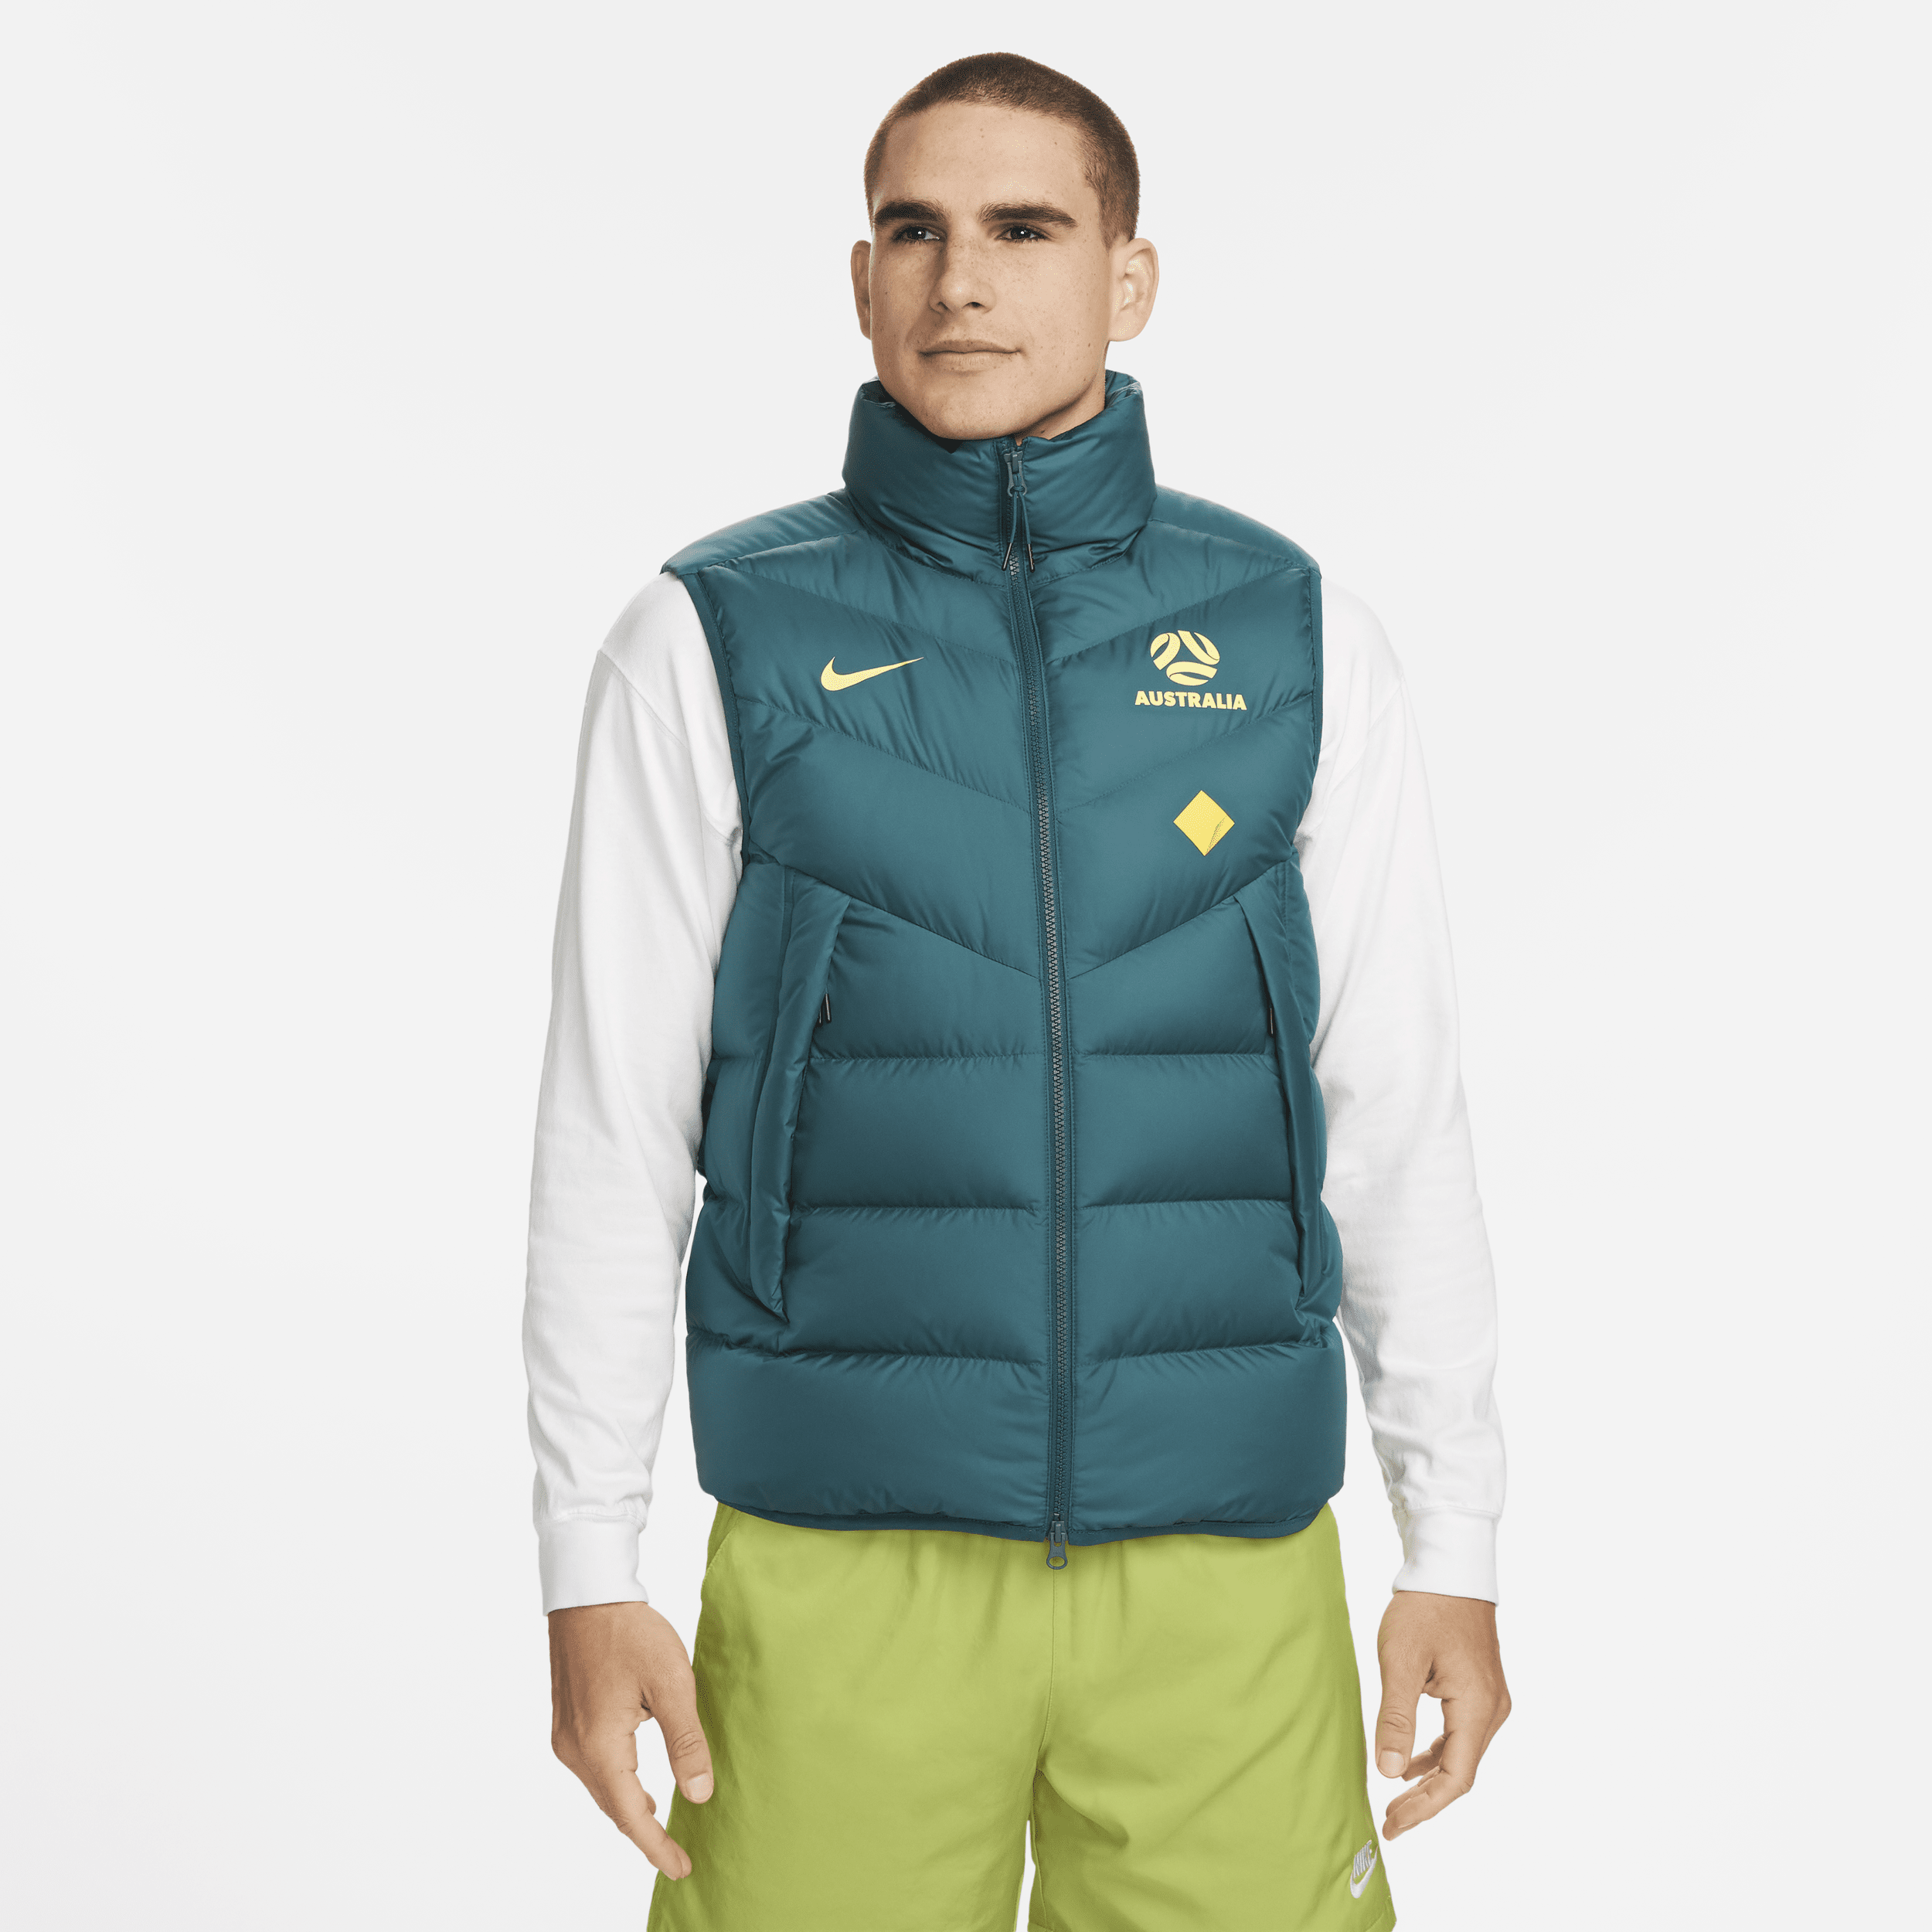 Australië Windrunner Nike voetbalbodywarmer met dons voor heren - Groen